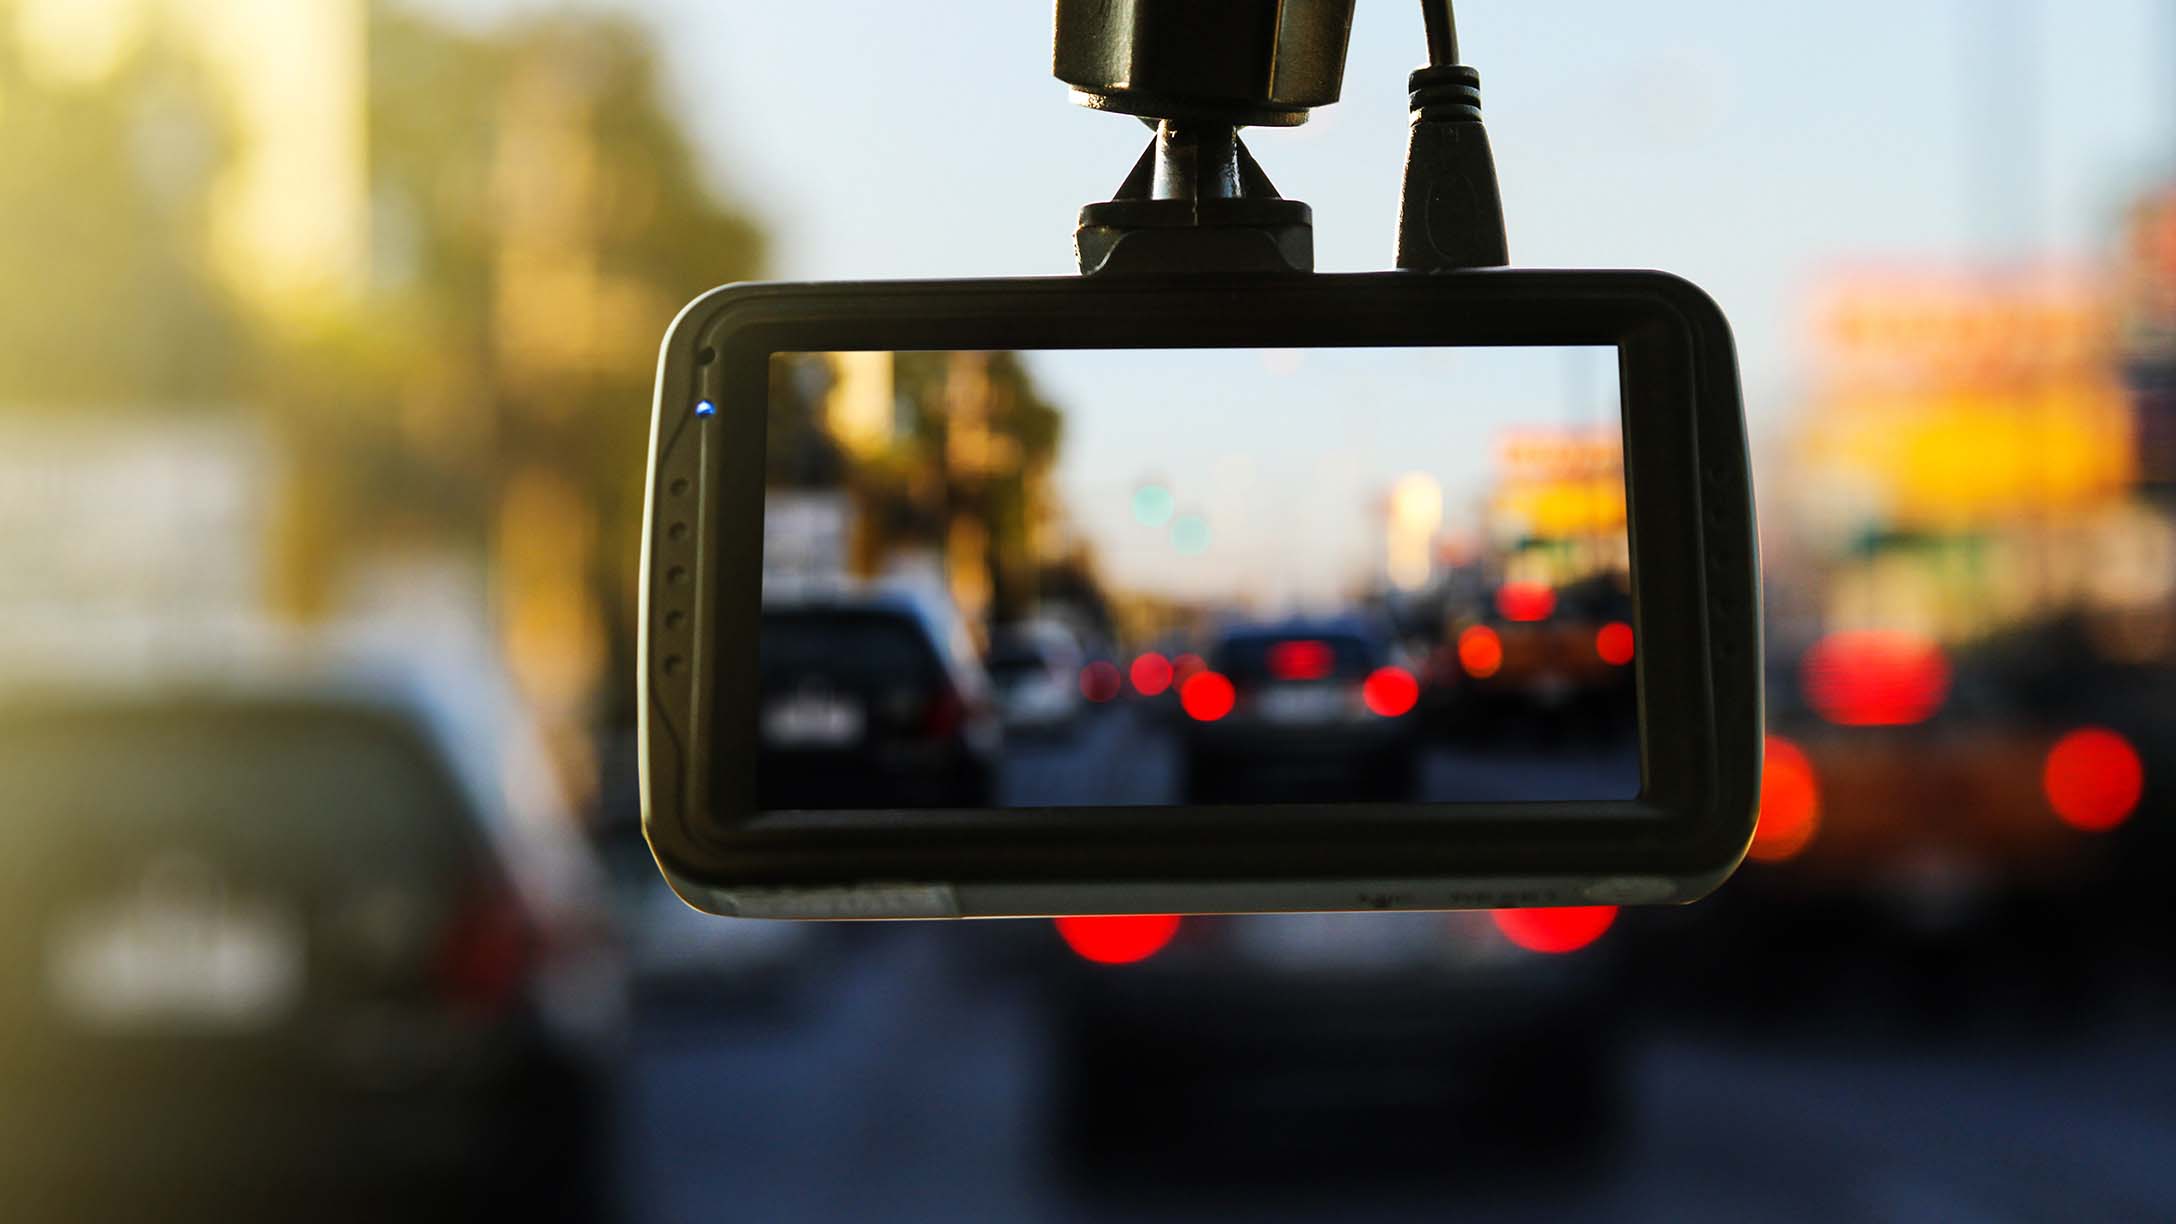 Video camera in car